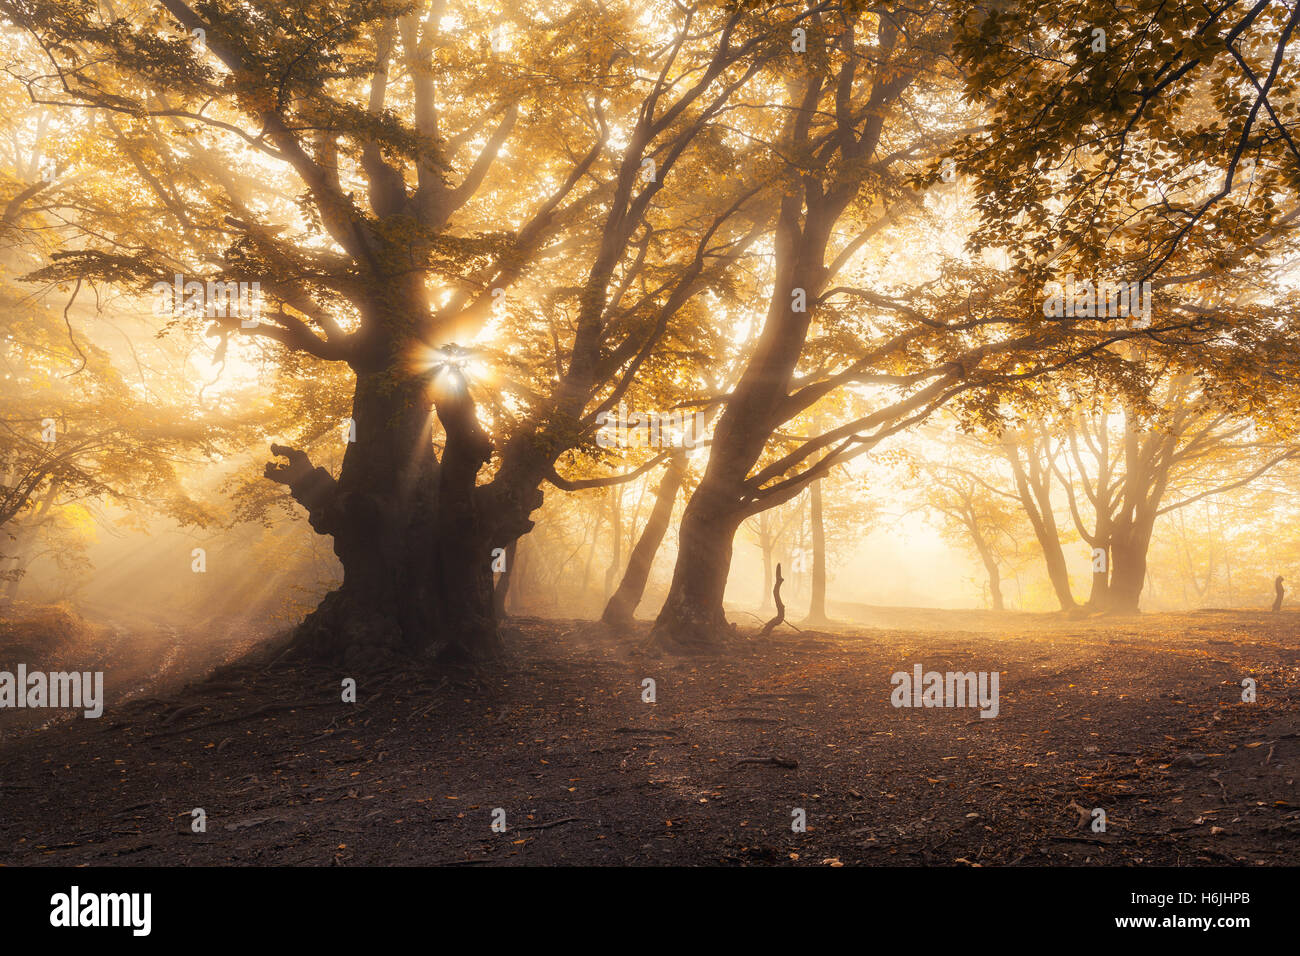 Magica vecchio albero con raggi di sole del mattino. La foresta nella nebbia. Paesaggio colorato con foggy forest, oro la luce solare Foto Stock